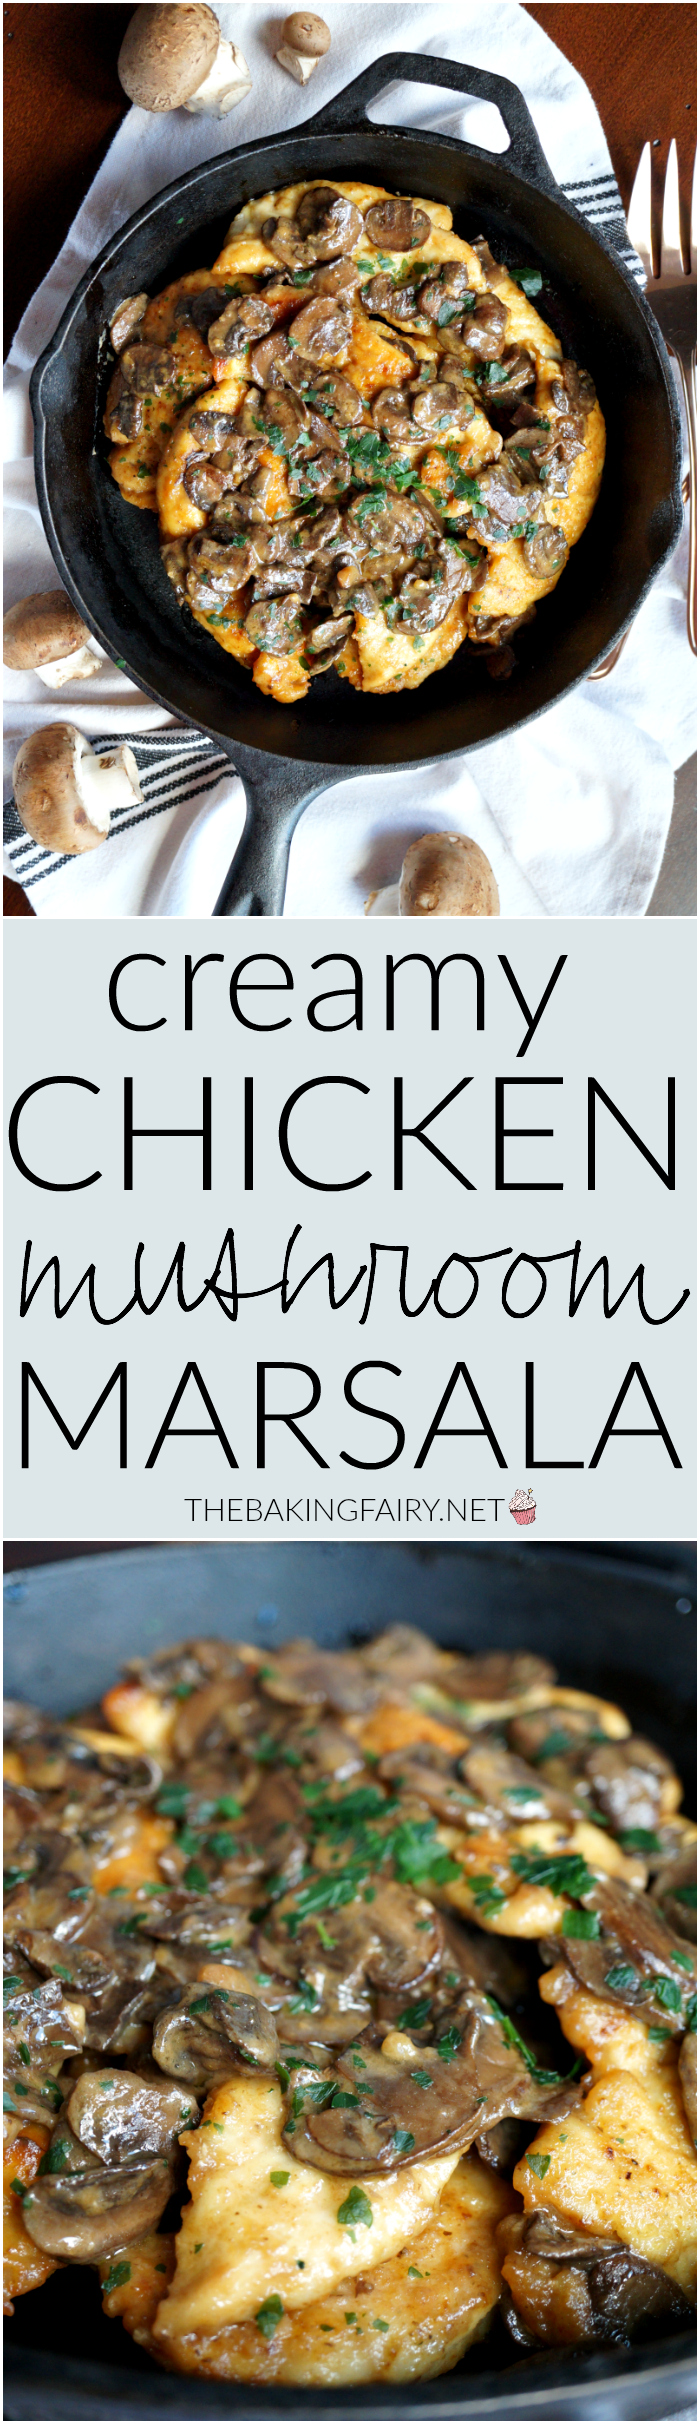 chicken marsala | The Baking Fairy